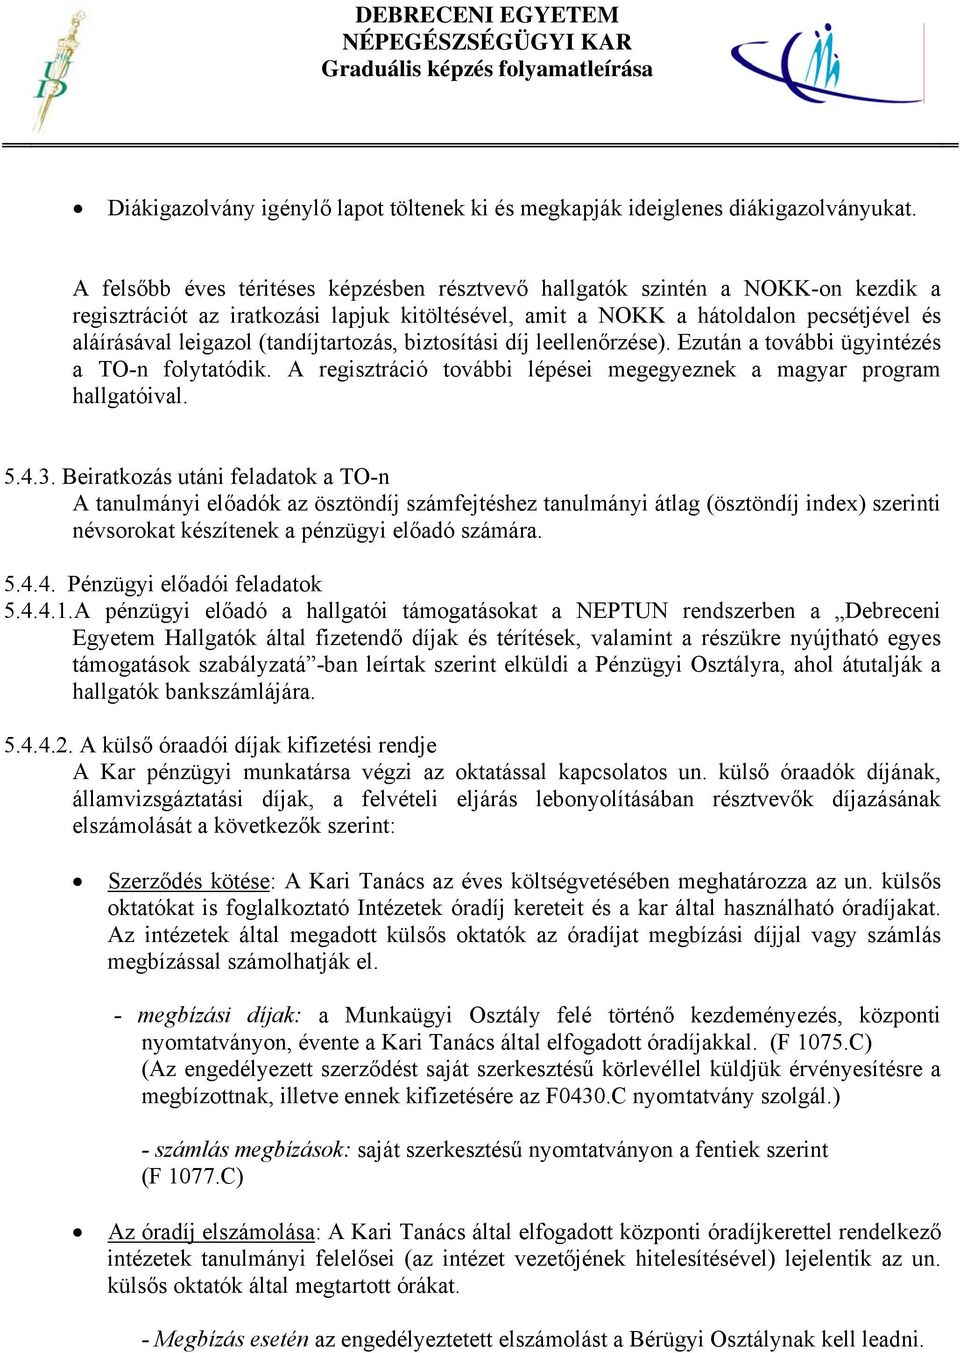 Graduális képzés a Debreceni Egyetem Népegészségügyi Karán MF 11.NK - PDF  Free Download